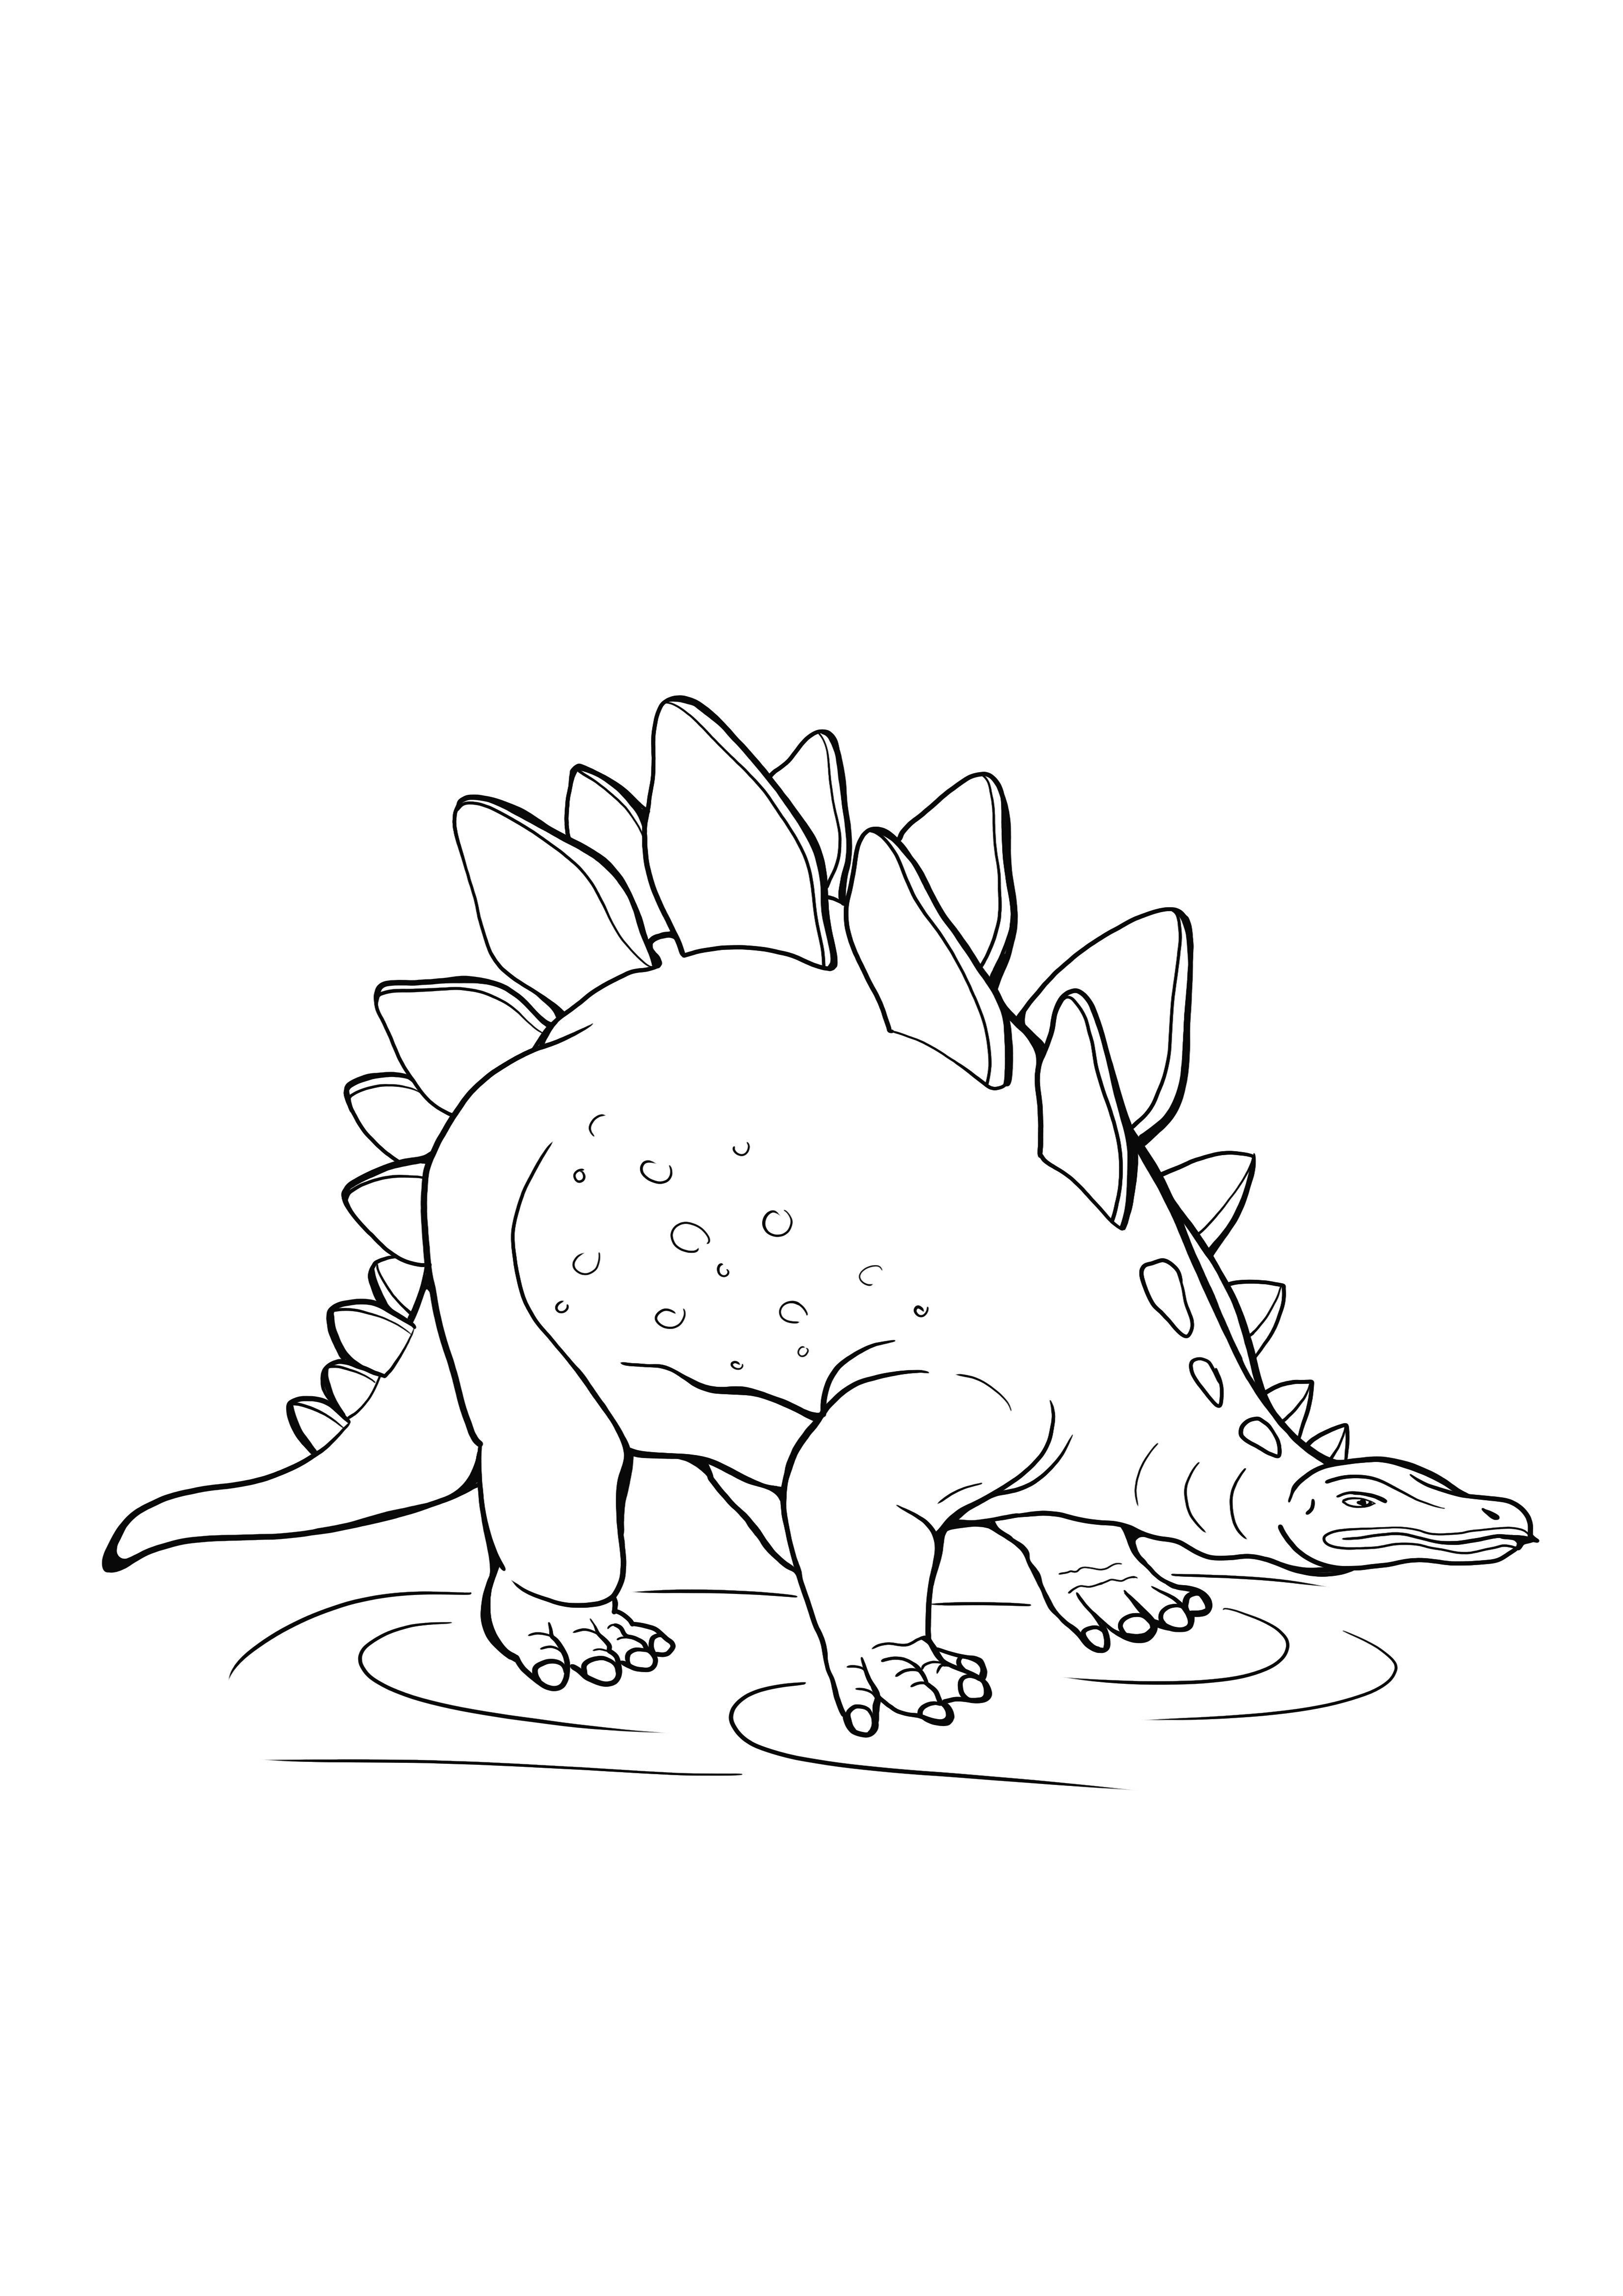 Stegosaurus ücretsiz yazdıracak ve renklendirecek